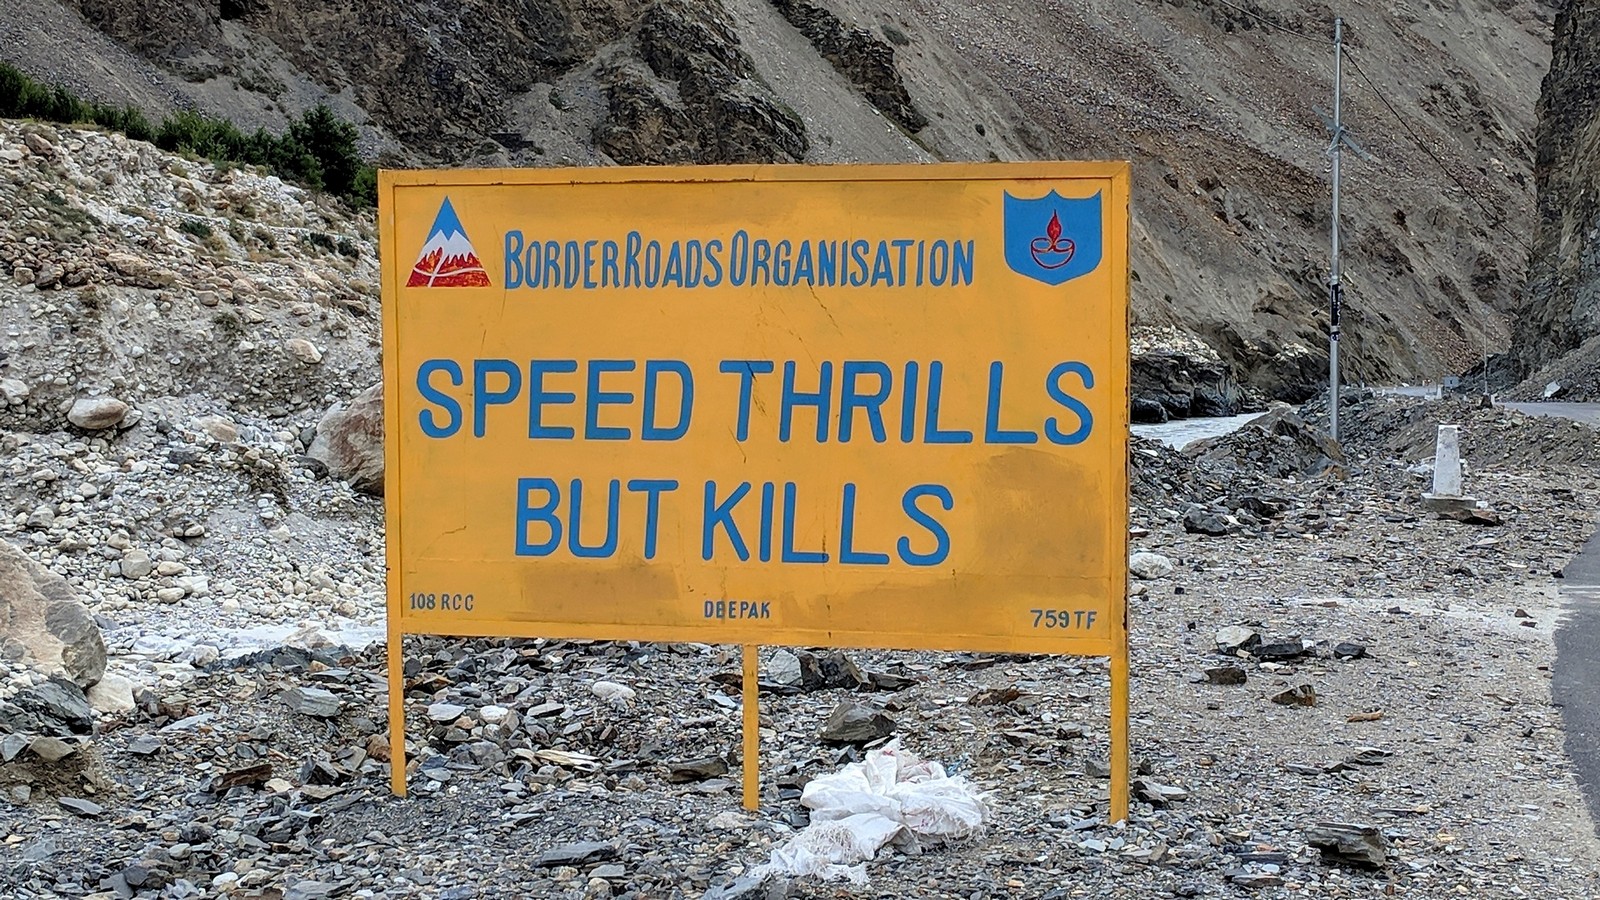 Speed Thrills But Kills roadside sign